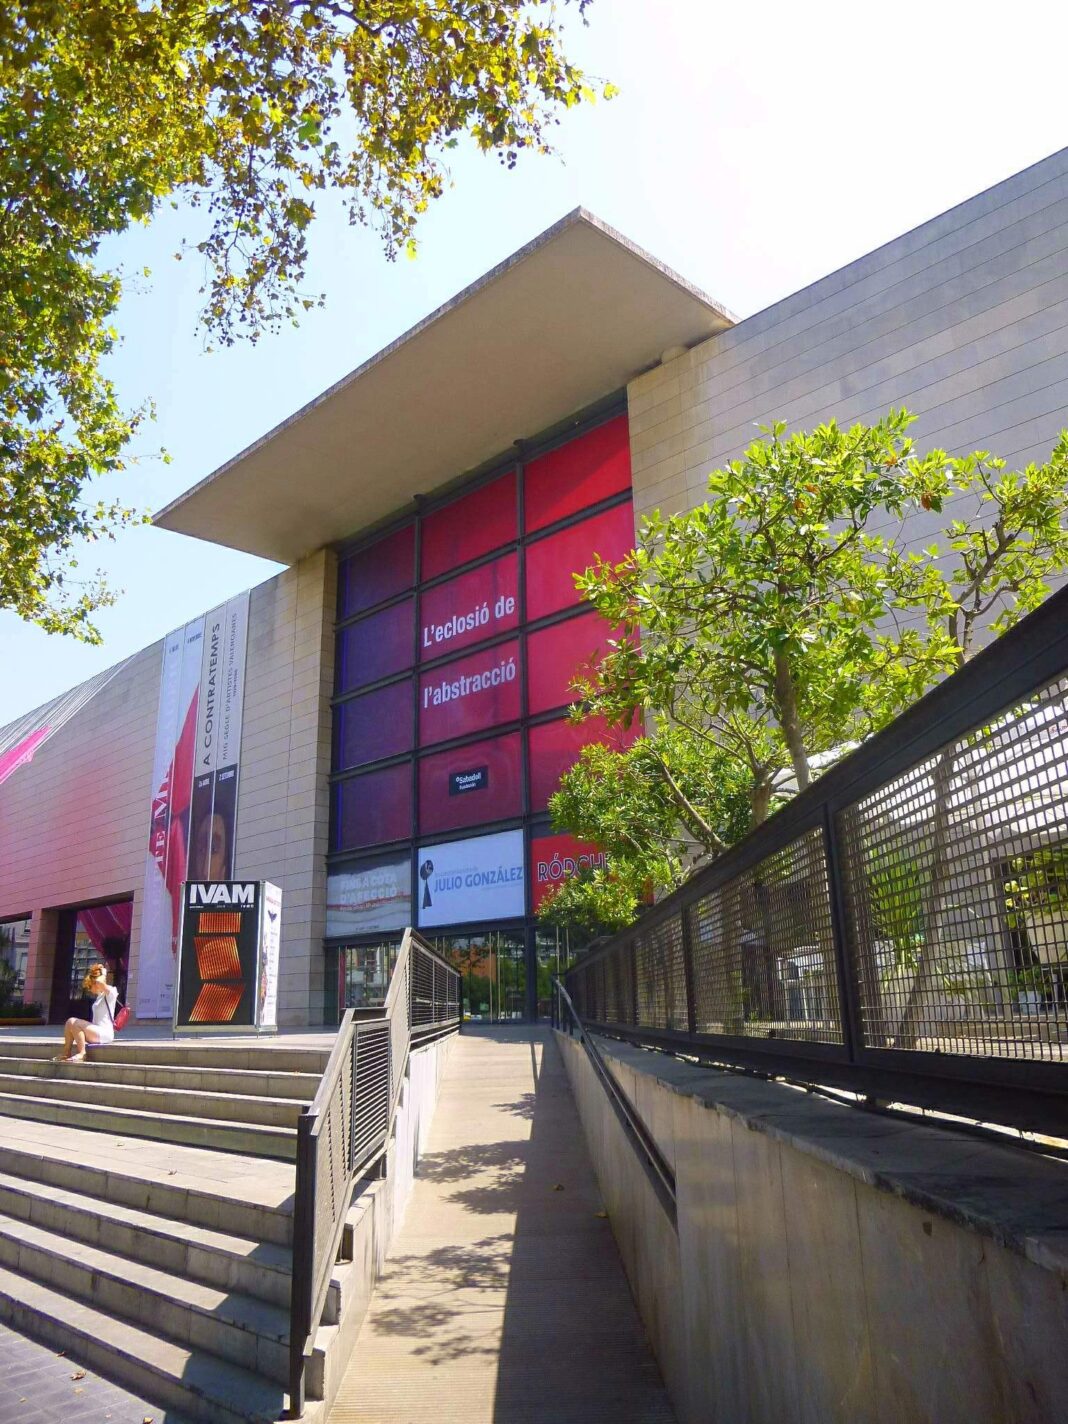 IVAM – Institut Valencià d’Art Modern